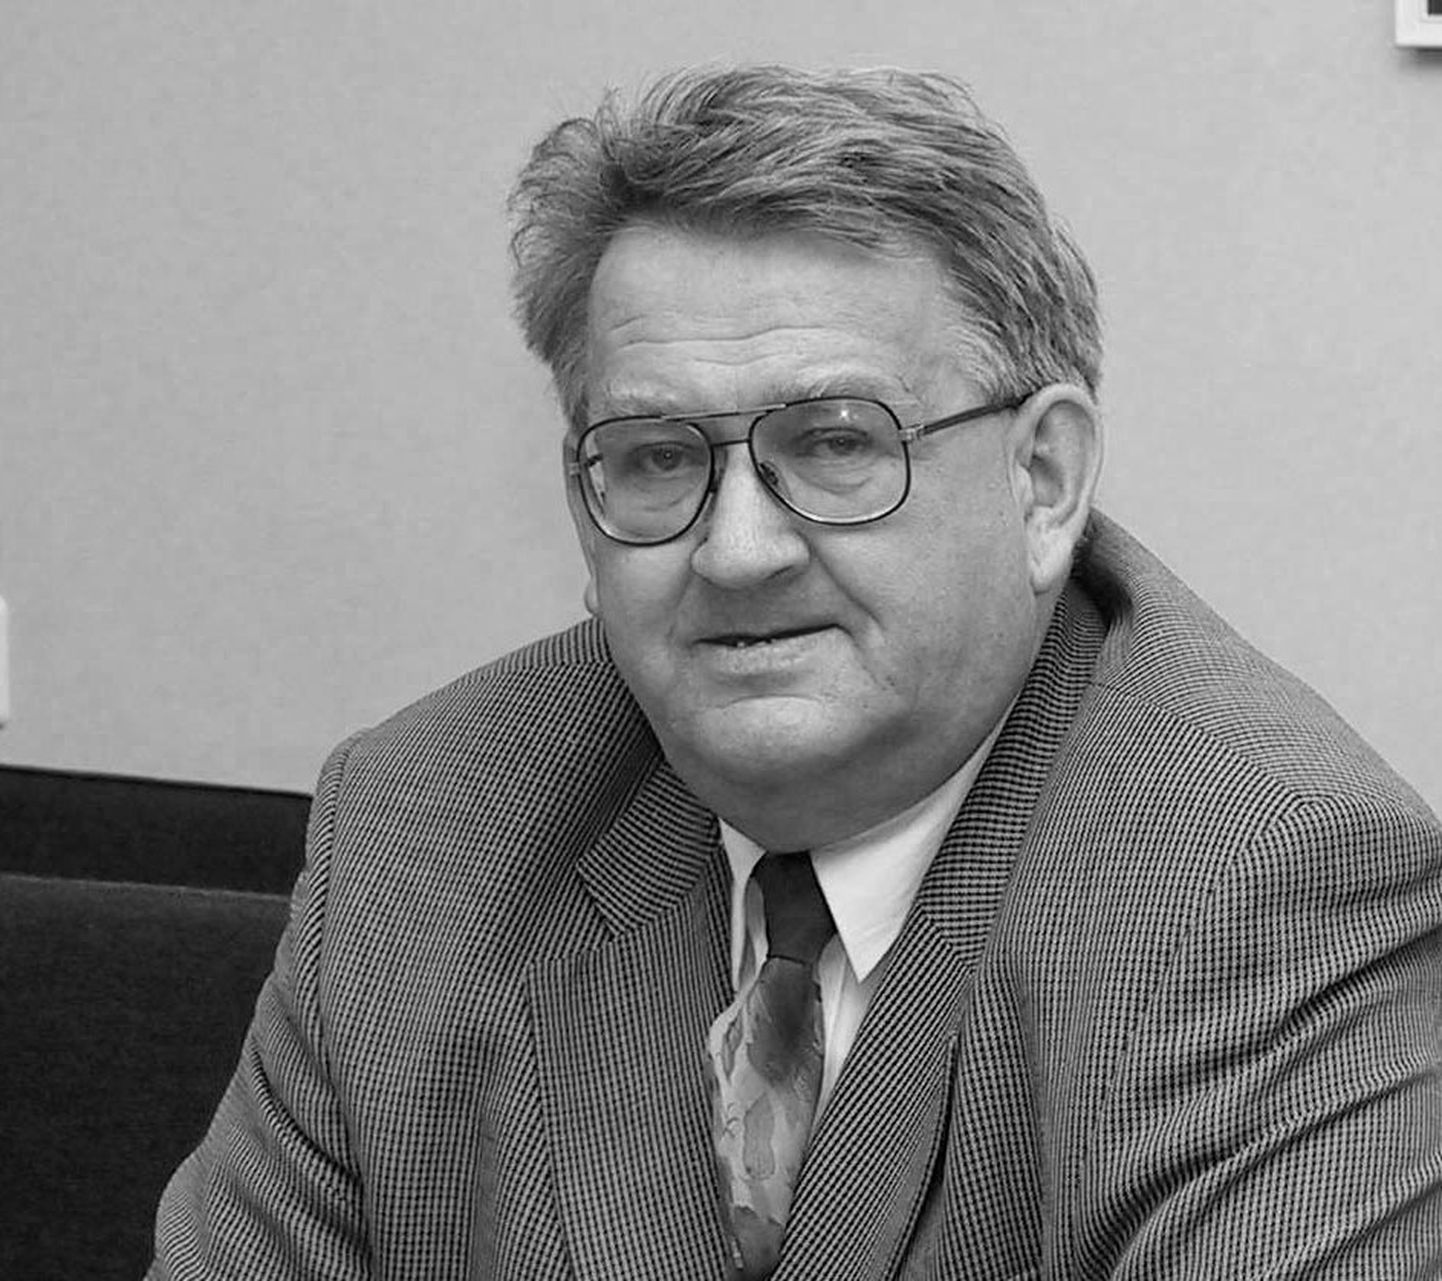 Валдек Мурд в 1999-2005 годах возглавлял городское собрание Силламяэ.